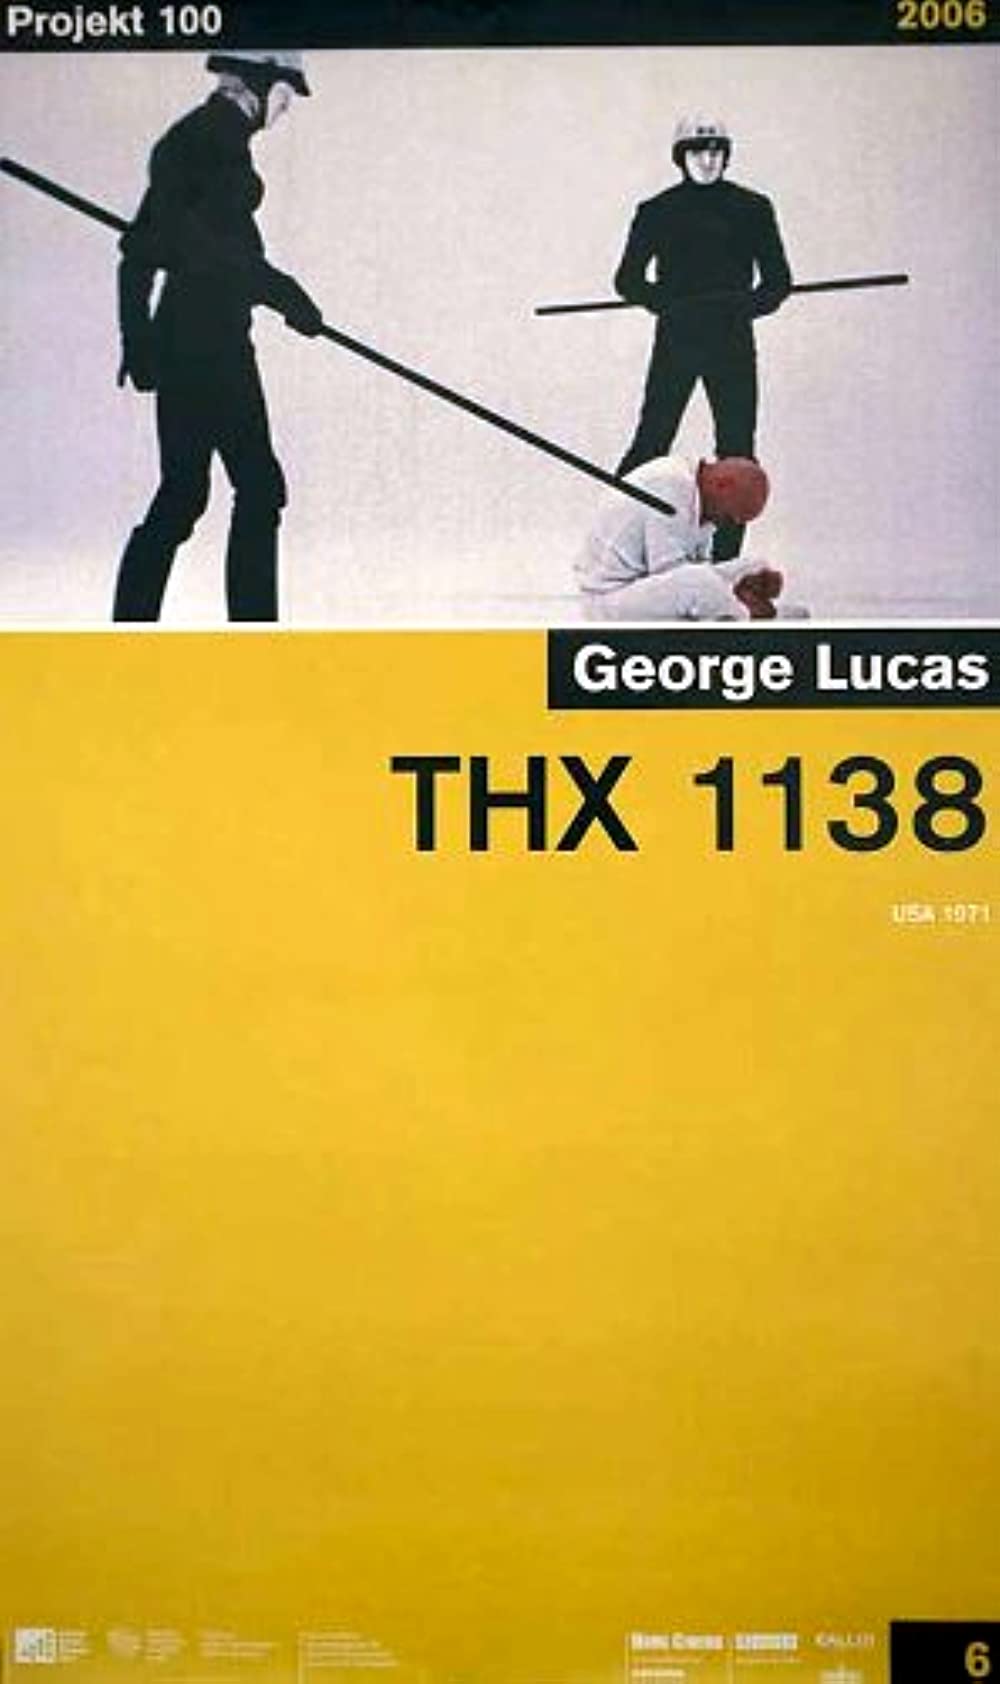 Filmbeschreibung zu THX 1138